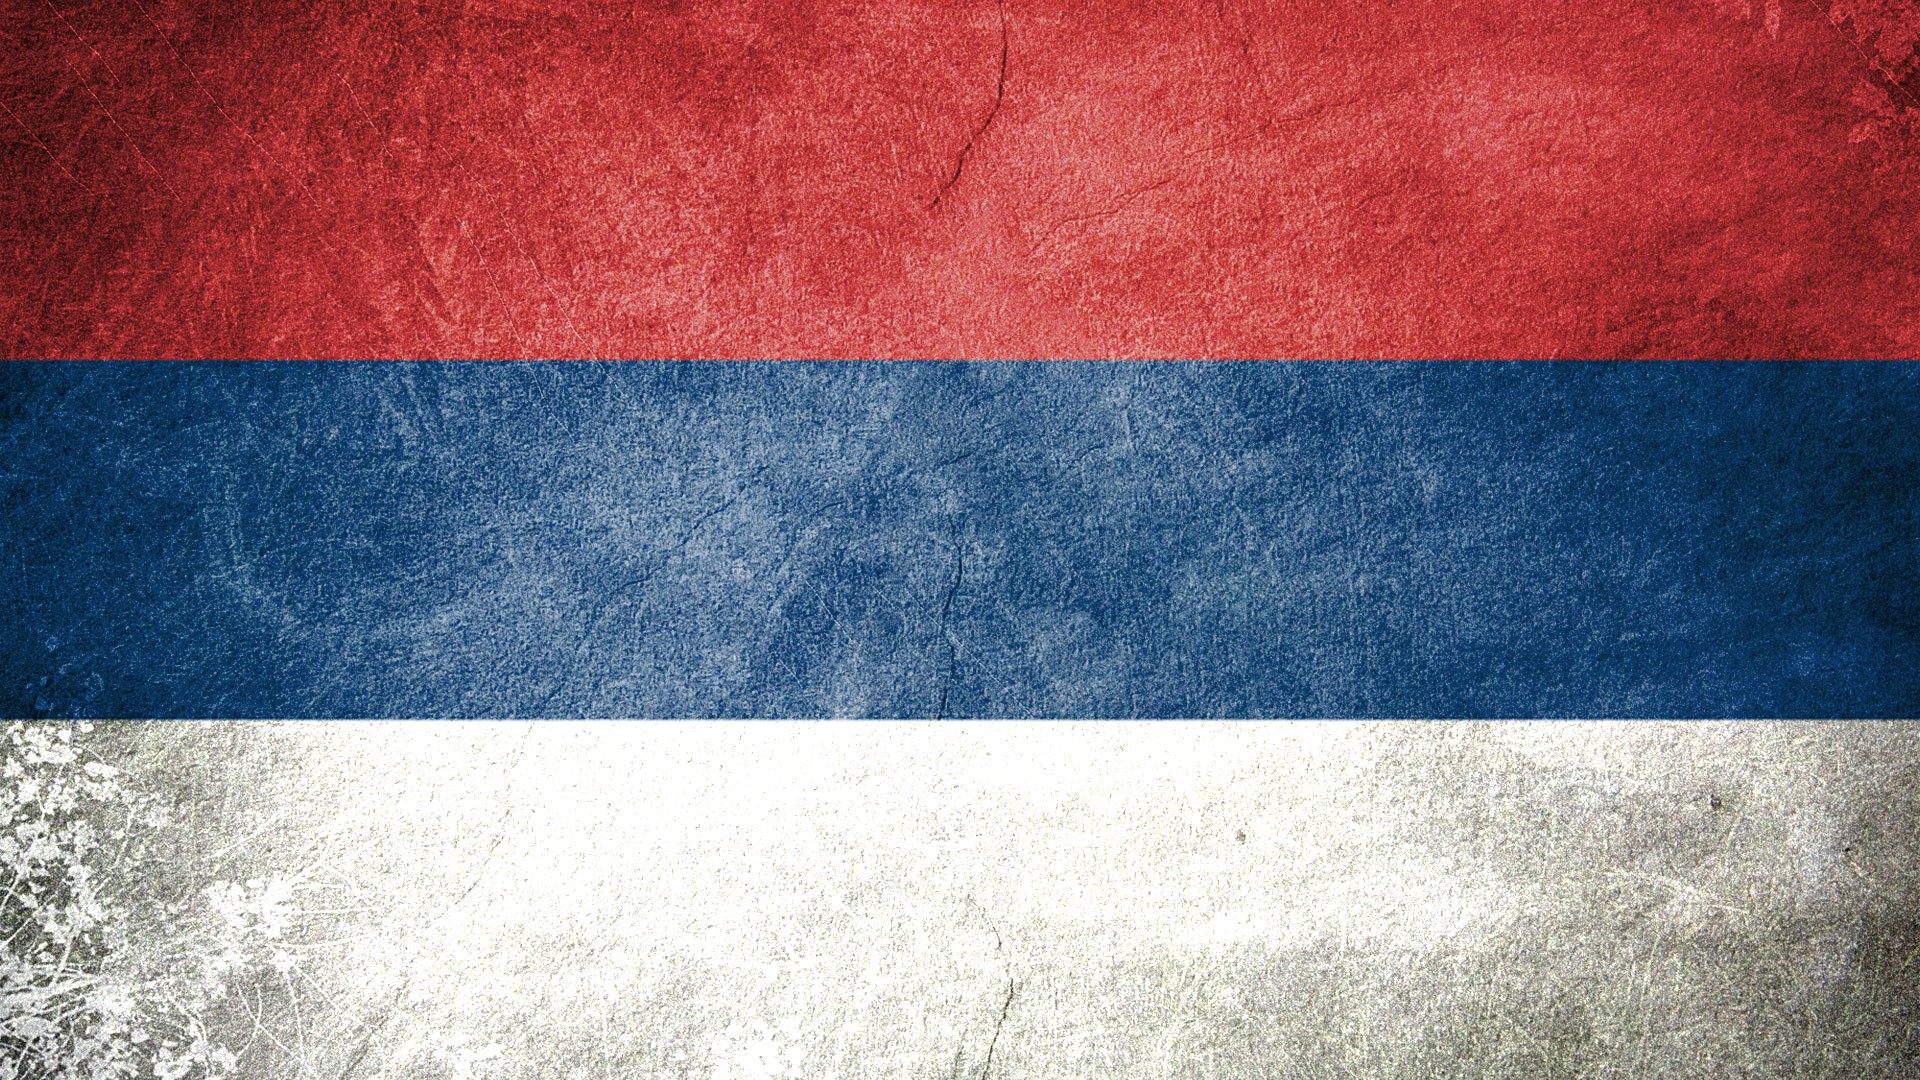 Serbia Wallpaper Flags Serbian Civil Flag